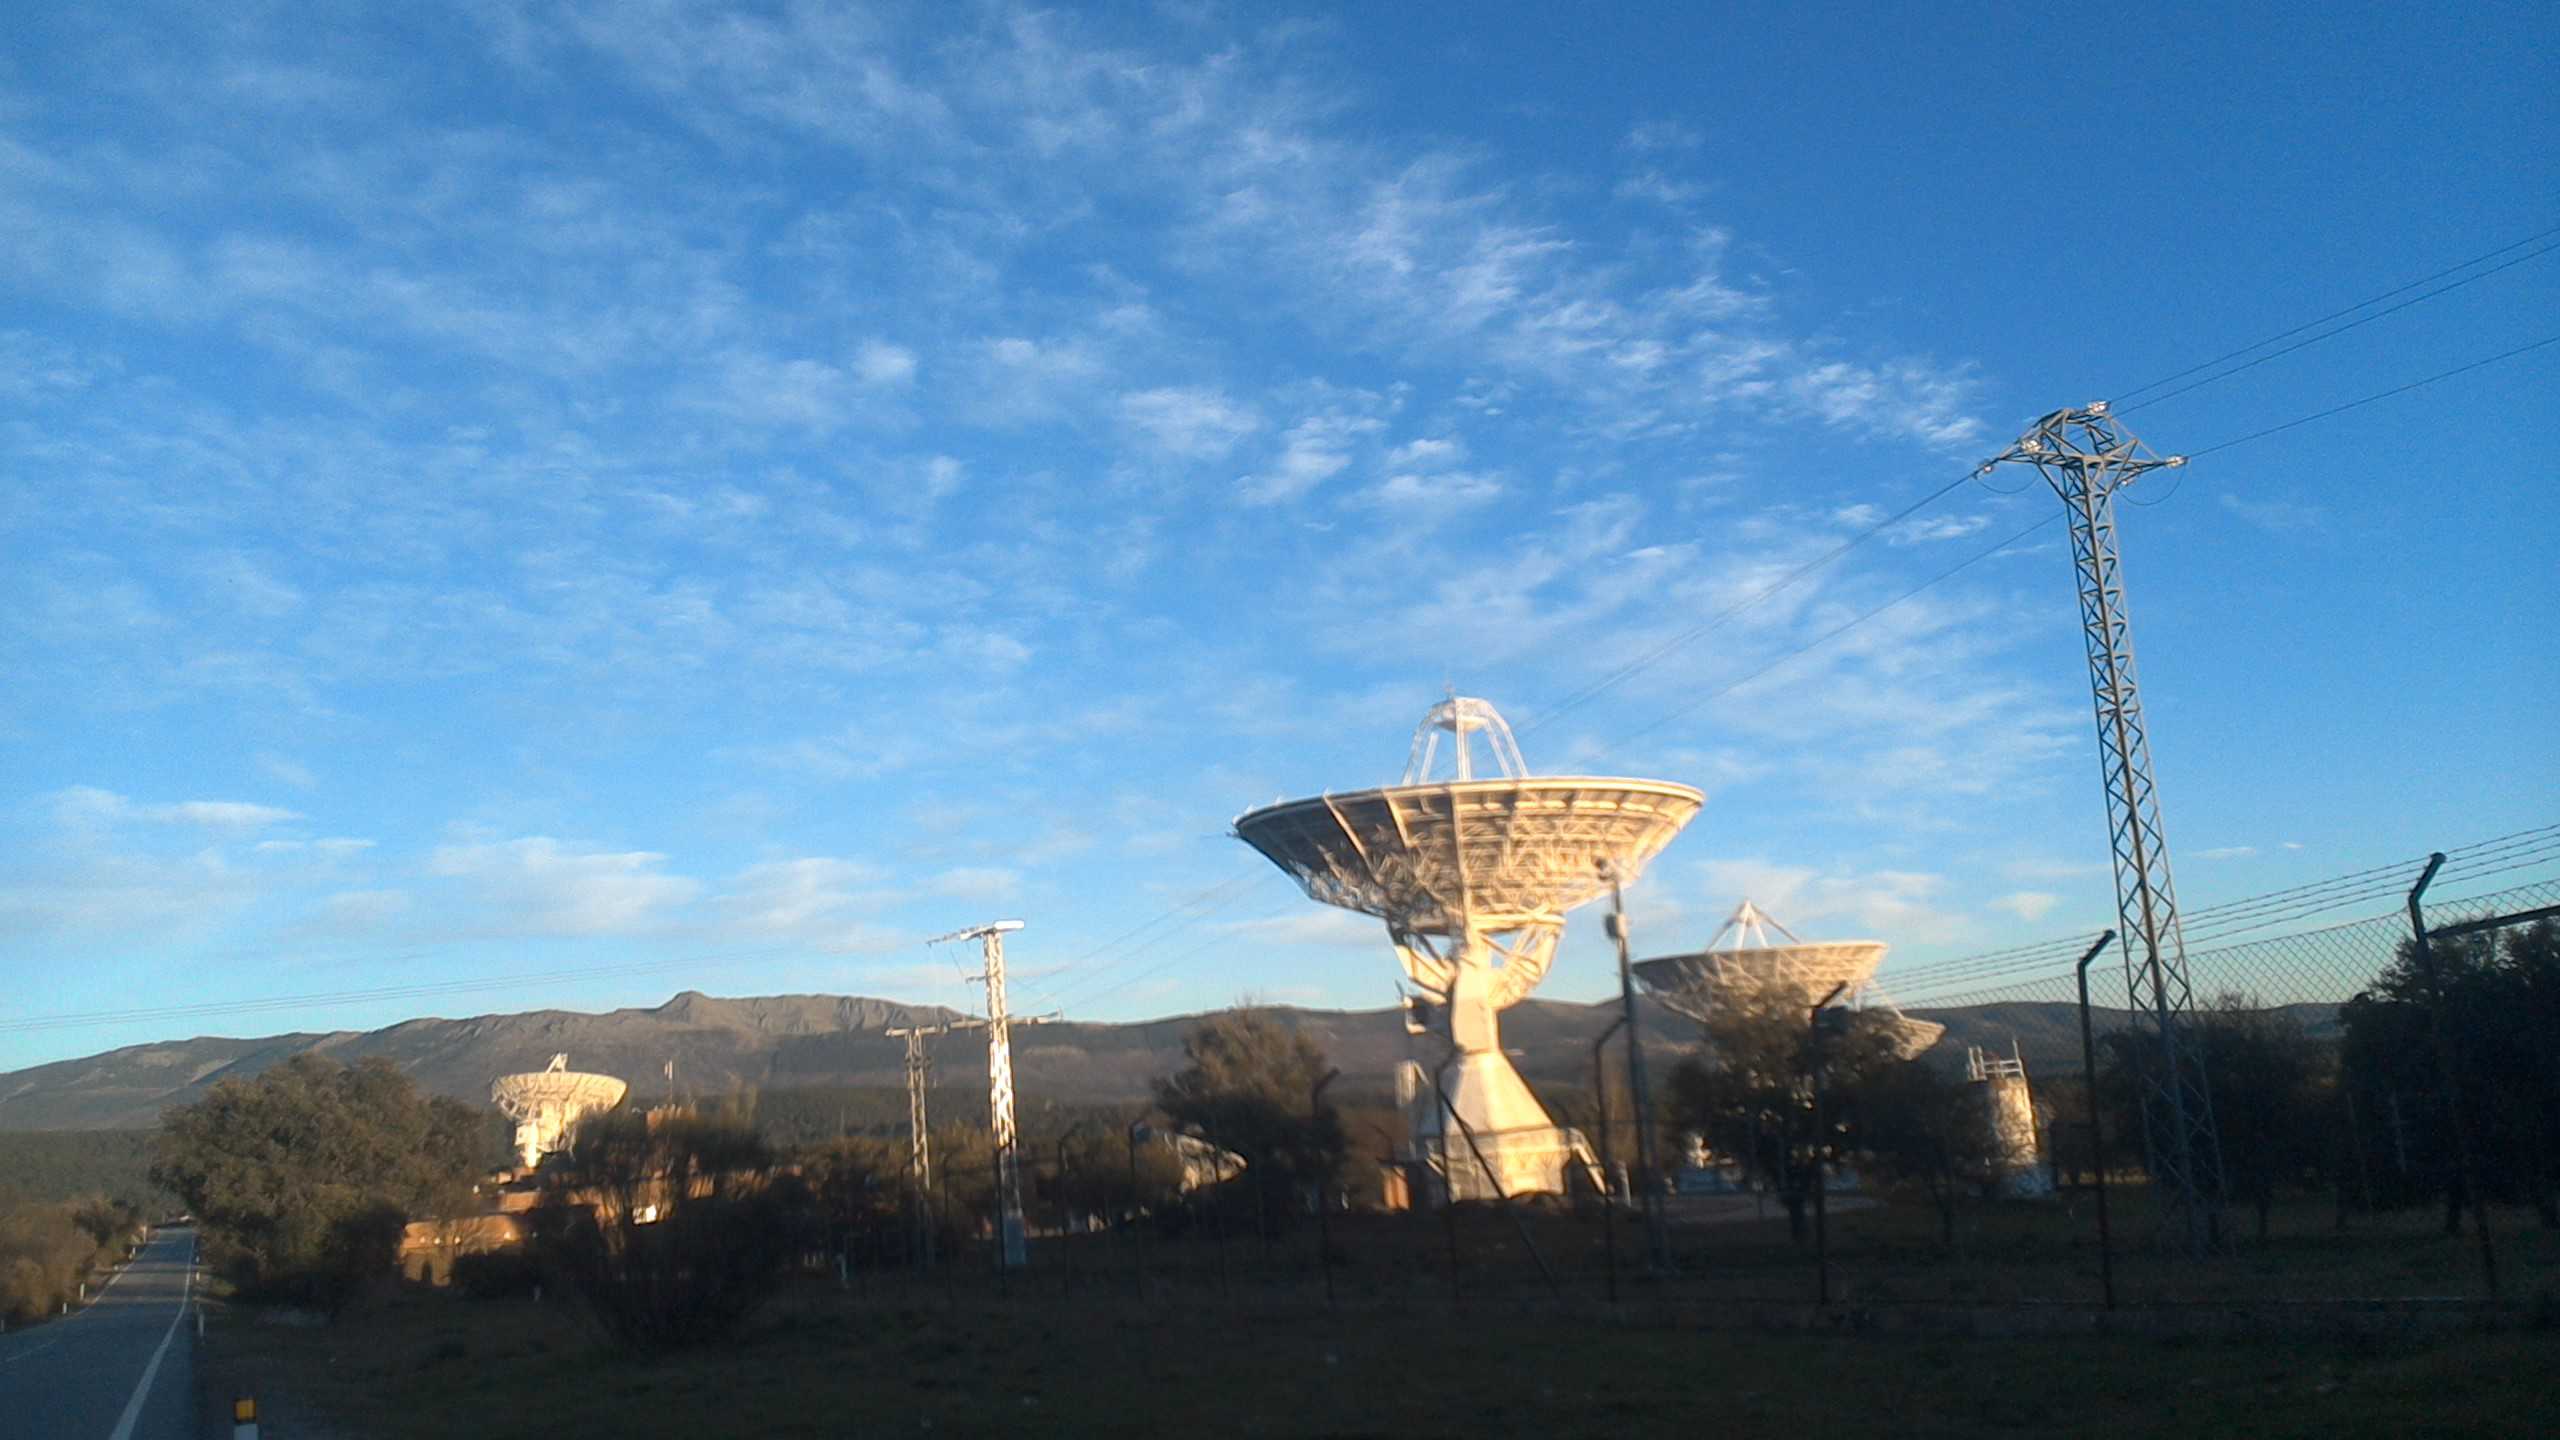 La estación de comunicaciones por satélite en Buitrago, declarada bien de interés cultural de la Comunidad de Madrid, en la categoría de sitio científico